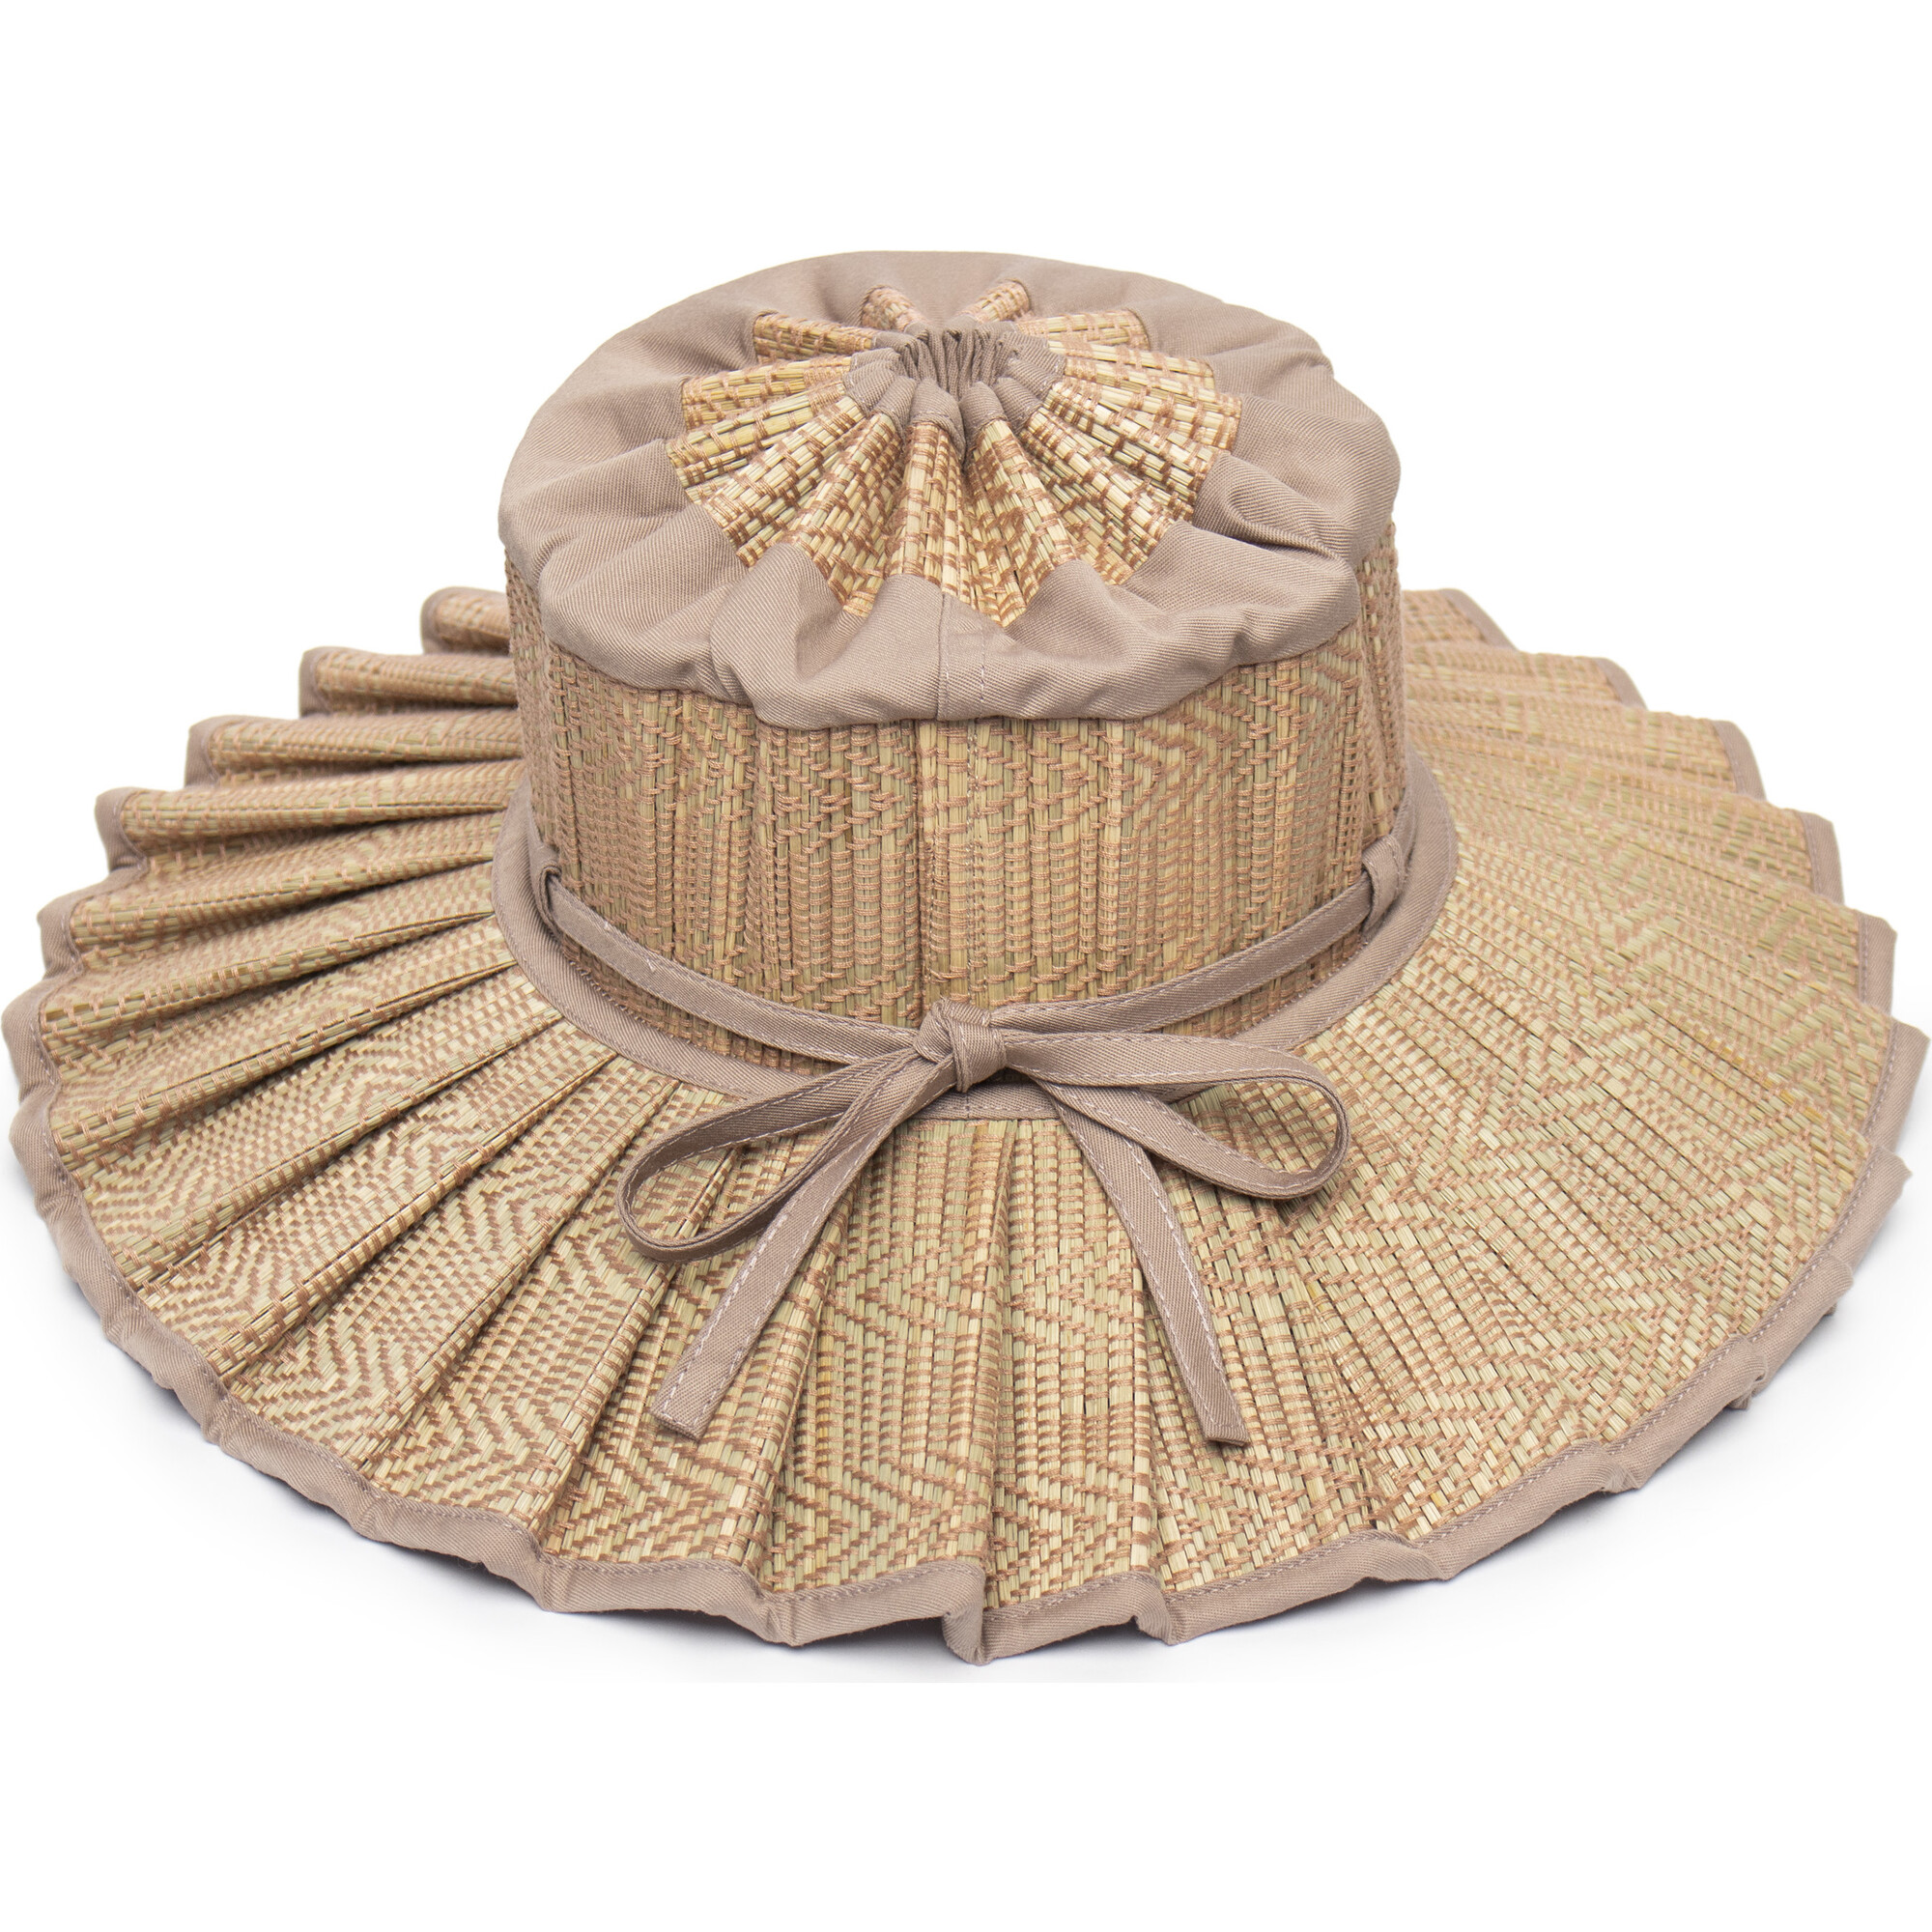 Capri Child Hat, Flores Bungalow - Lorna Murray Hats, Scarves 